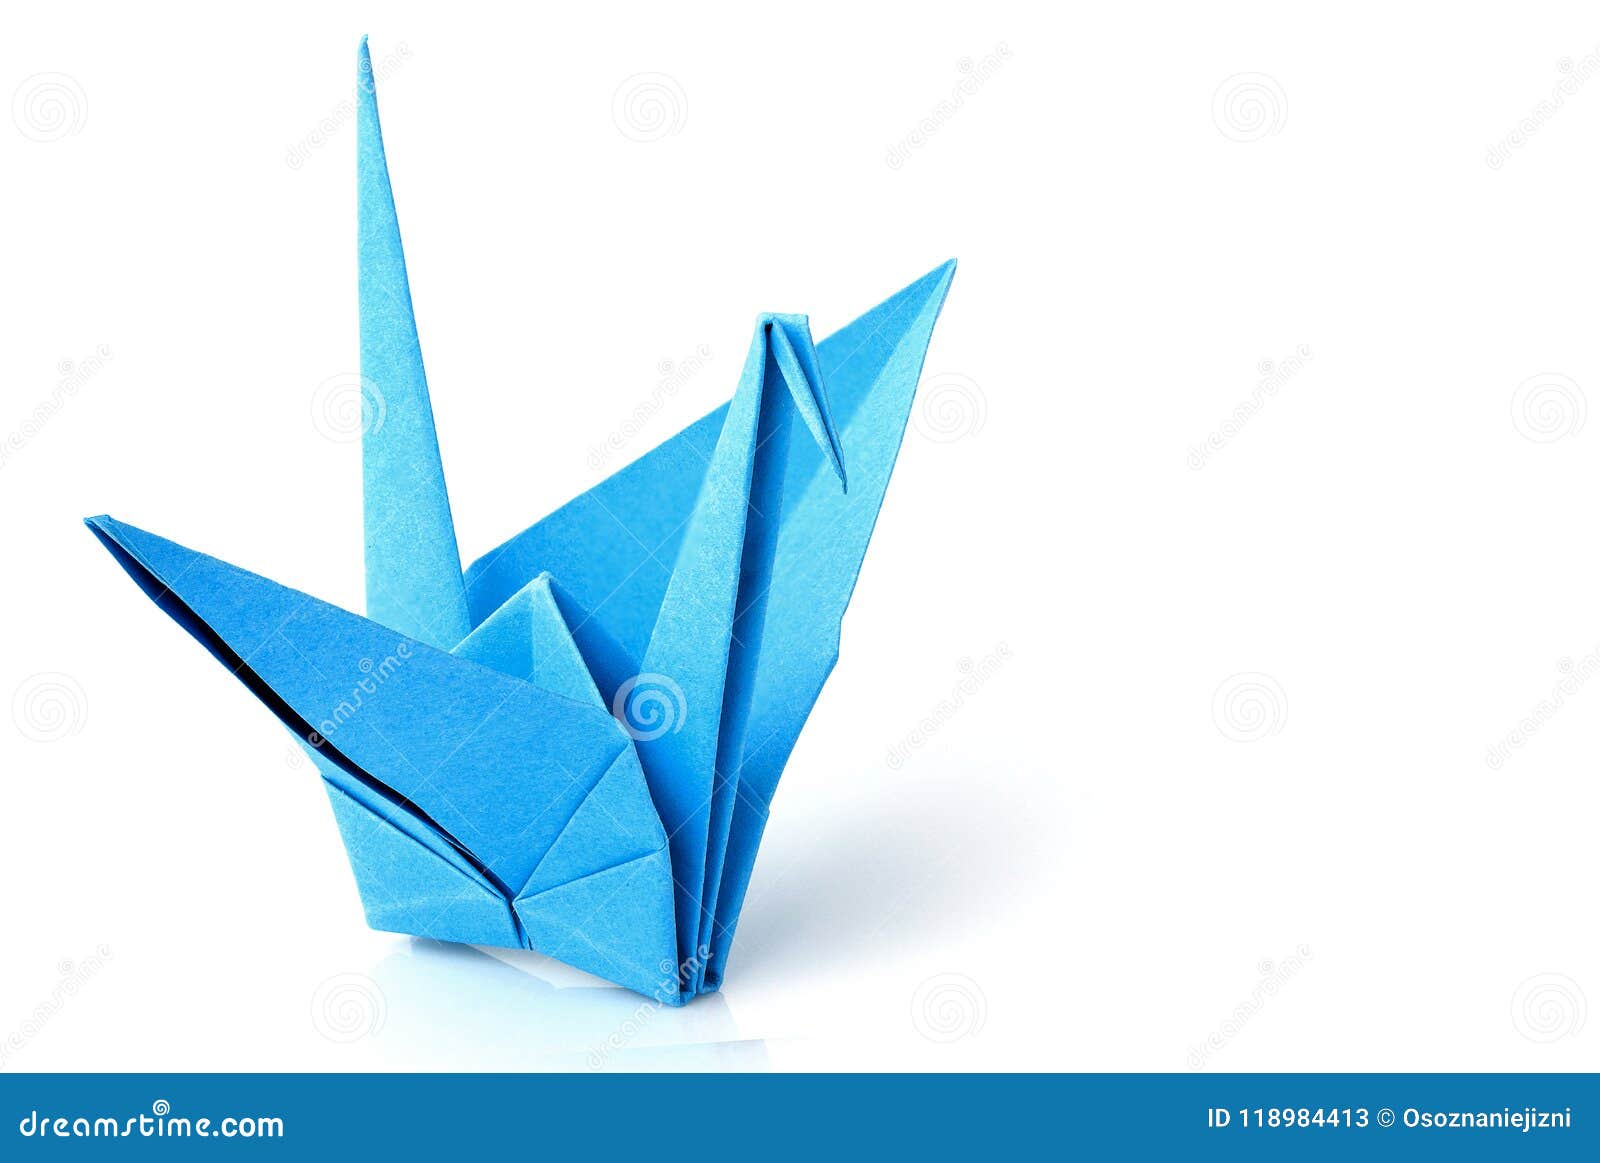 Большая птица оригами резиденция утренней росы. Оригами голубой. Проект оригами на синем фоне. Оригами синего цвета. Оригами блюз.